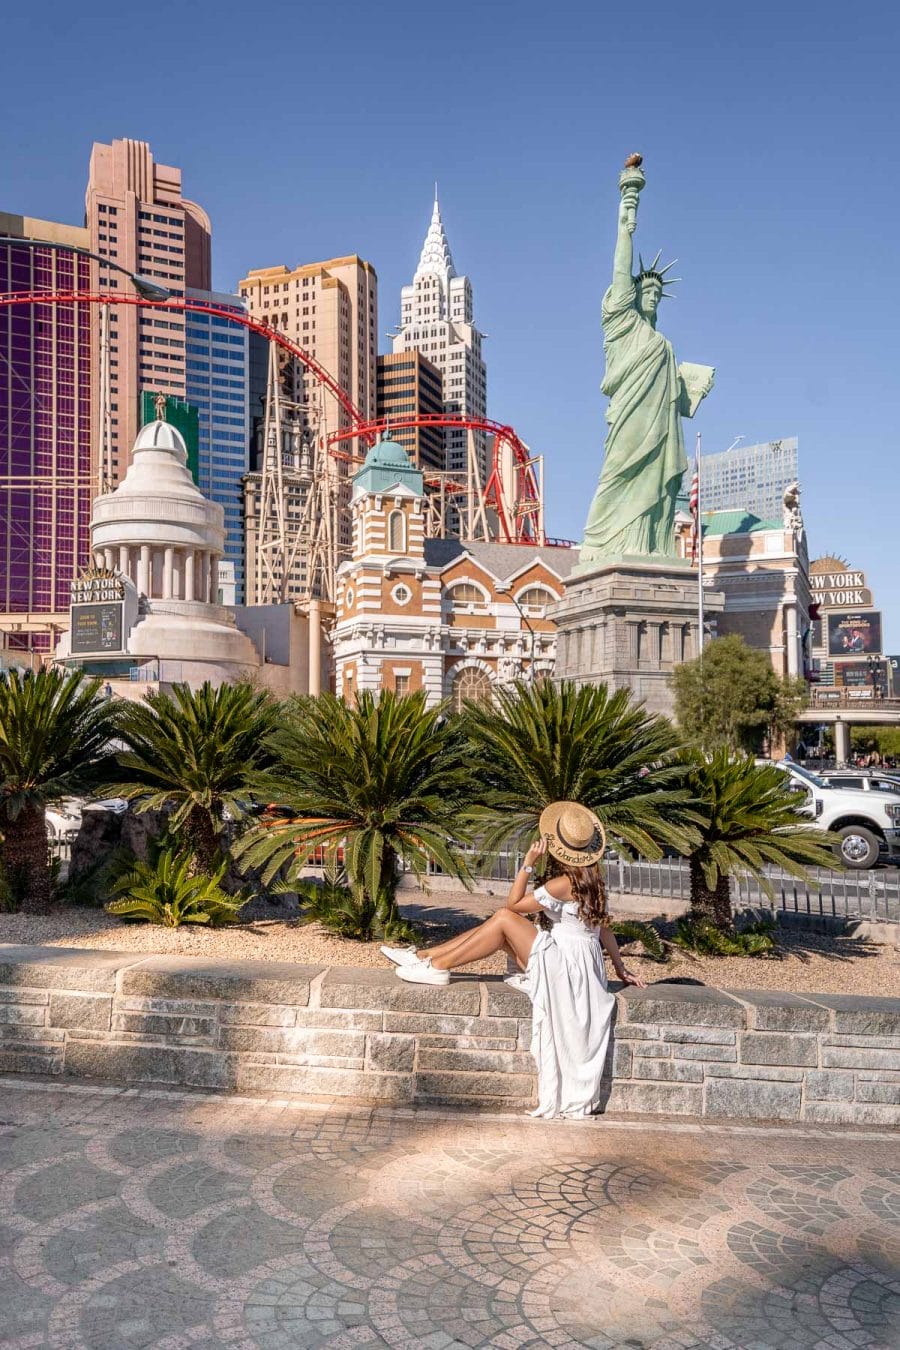 Girl in white dress in front of New York New York in Las Vegas